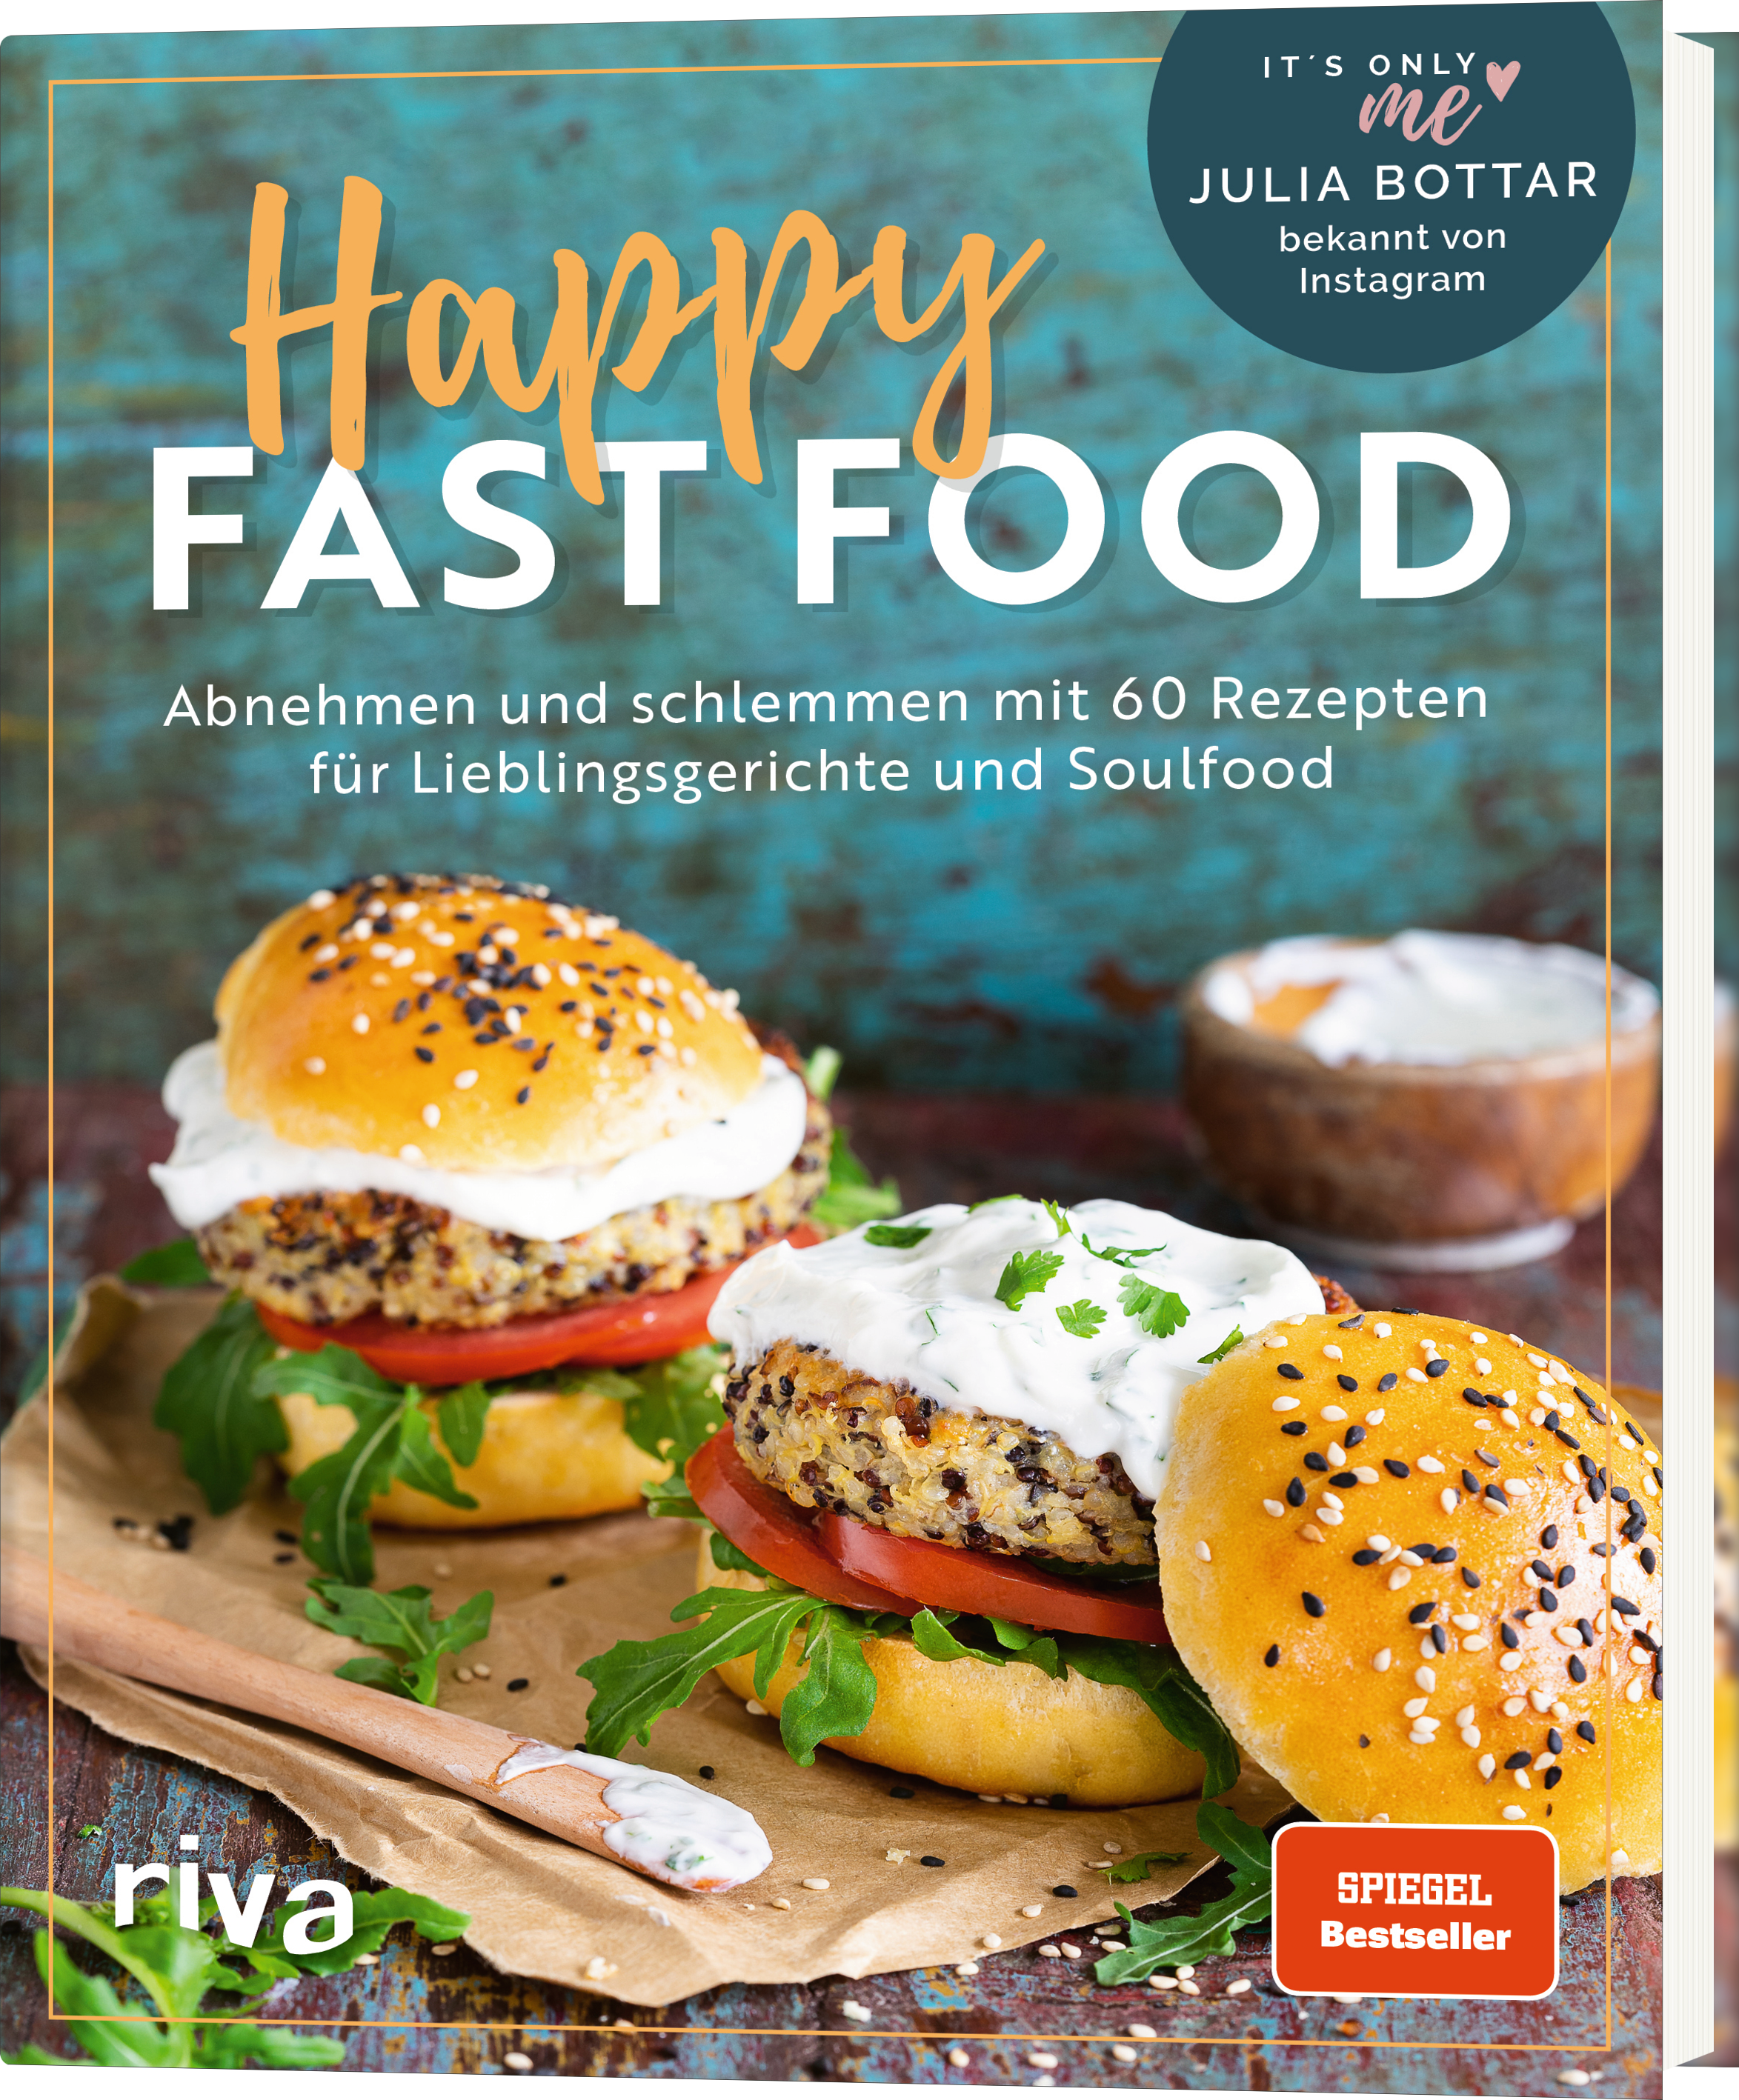 Buchvorstellung : Happy Fast Food